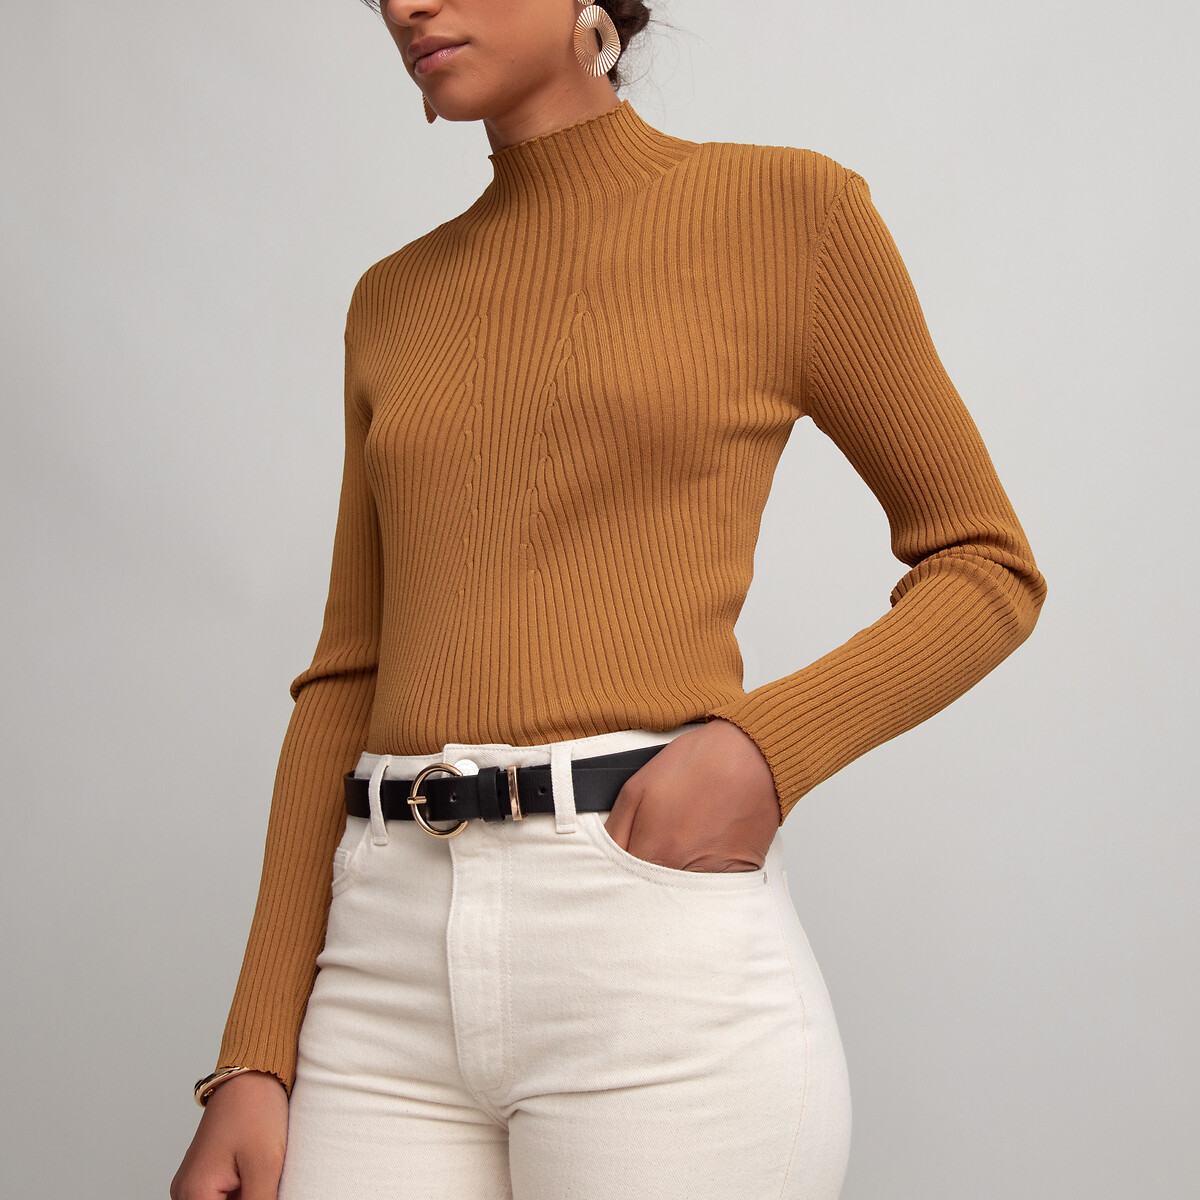 Пуловер La Redoute С воротником-стойкой из трикотажа в рубчик XL каштановый, размер XL - фото 3